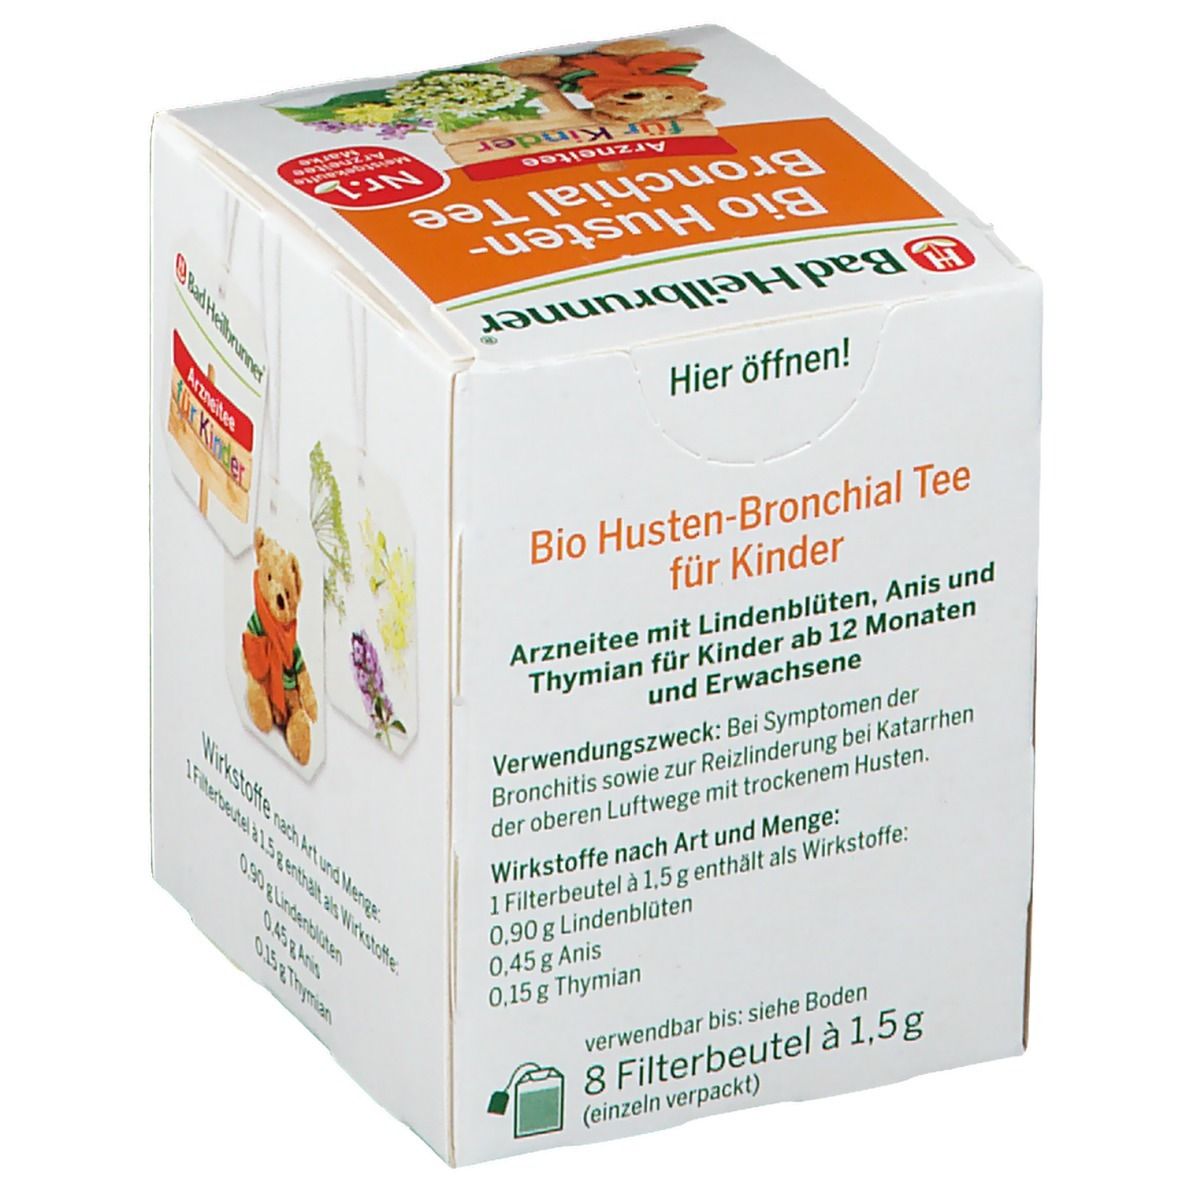 Bad Heilbrunner® Bio Husten-Bronchial Tee für Kinder